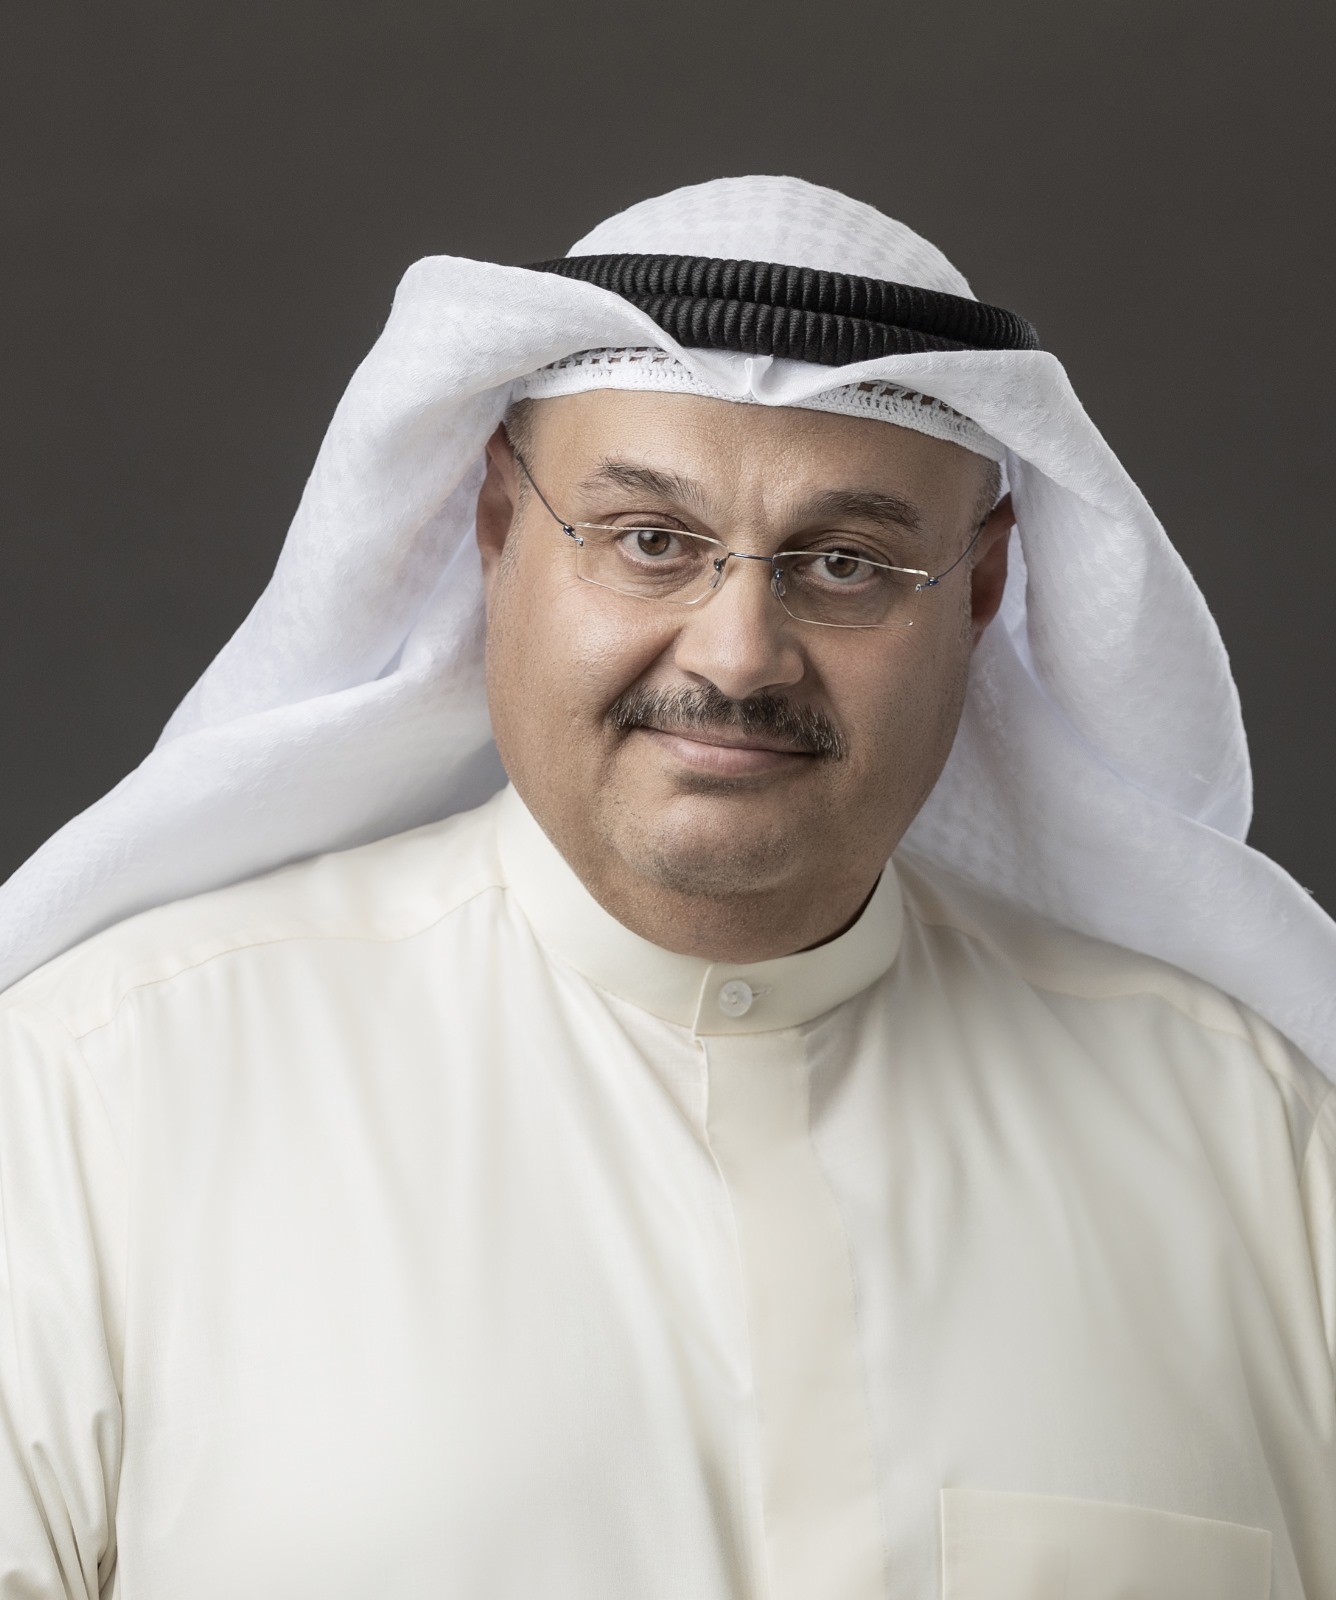 Le rédacteur en chef du journal « Al-Rai », Walid Al-Jassim.